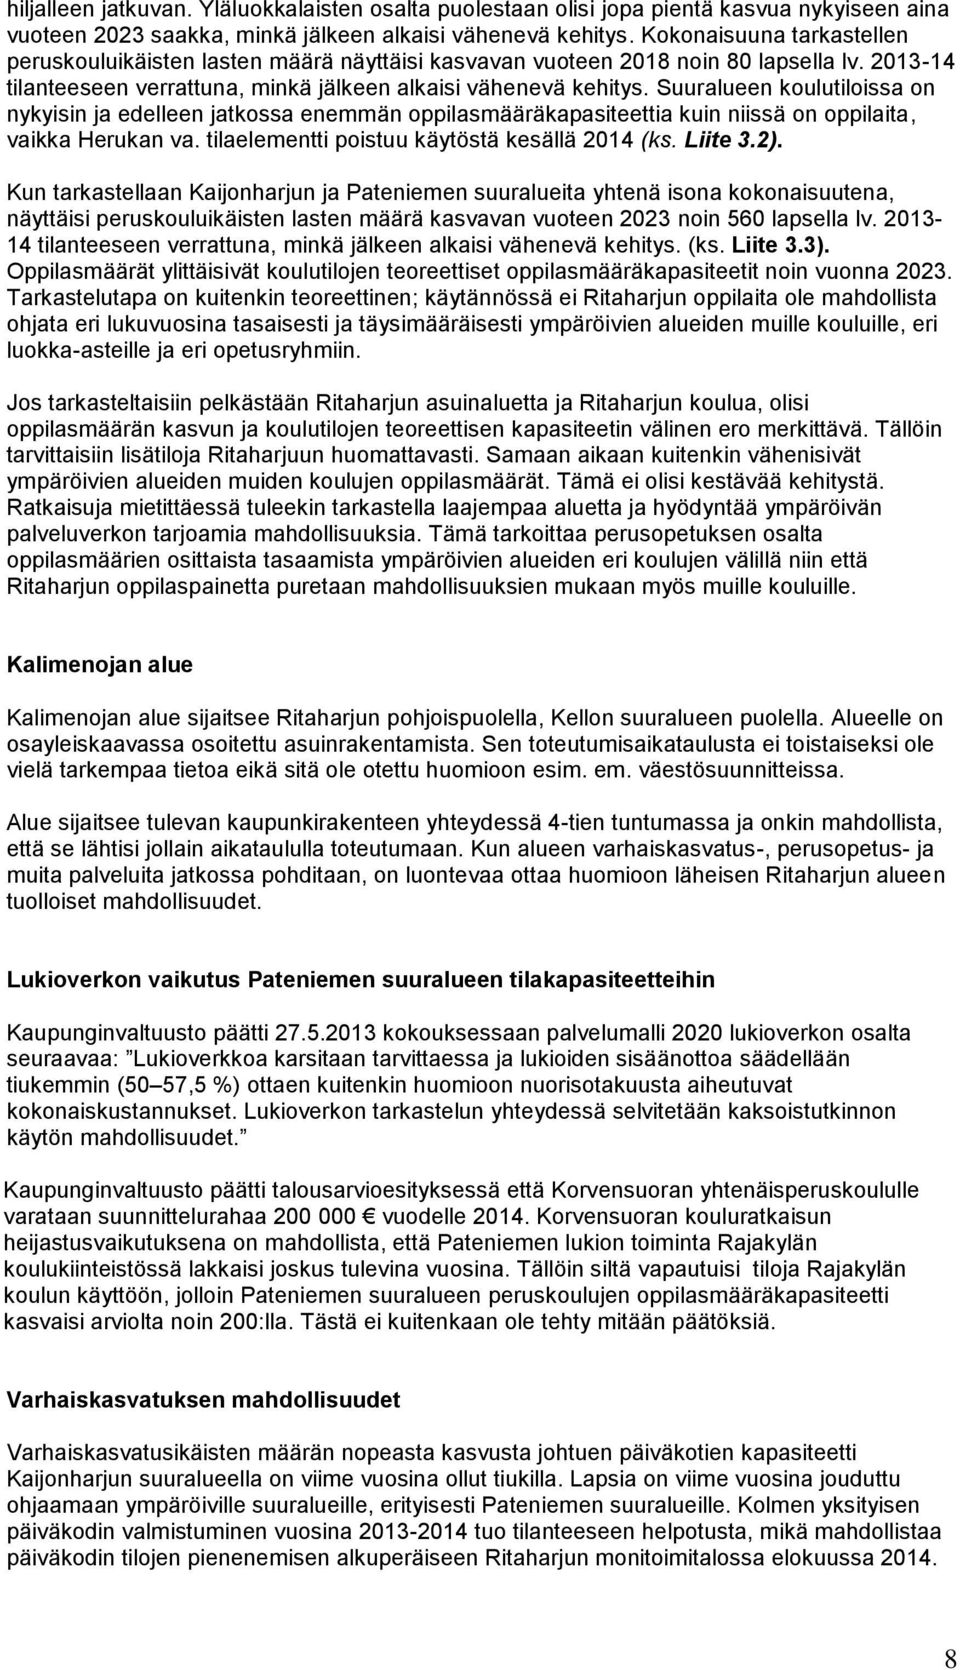 Suuralueen koulutiloissa on nykyisin ja edelleen jatkossa enemmän oppilasmääräkapasiteettia kuin niissä on oppilaita, vaikka Herukan va. tilaelementti poistuu käytöstä kesällä 2014 (ks. Liite 3.2).